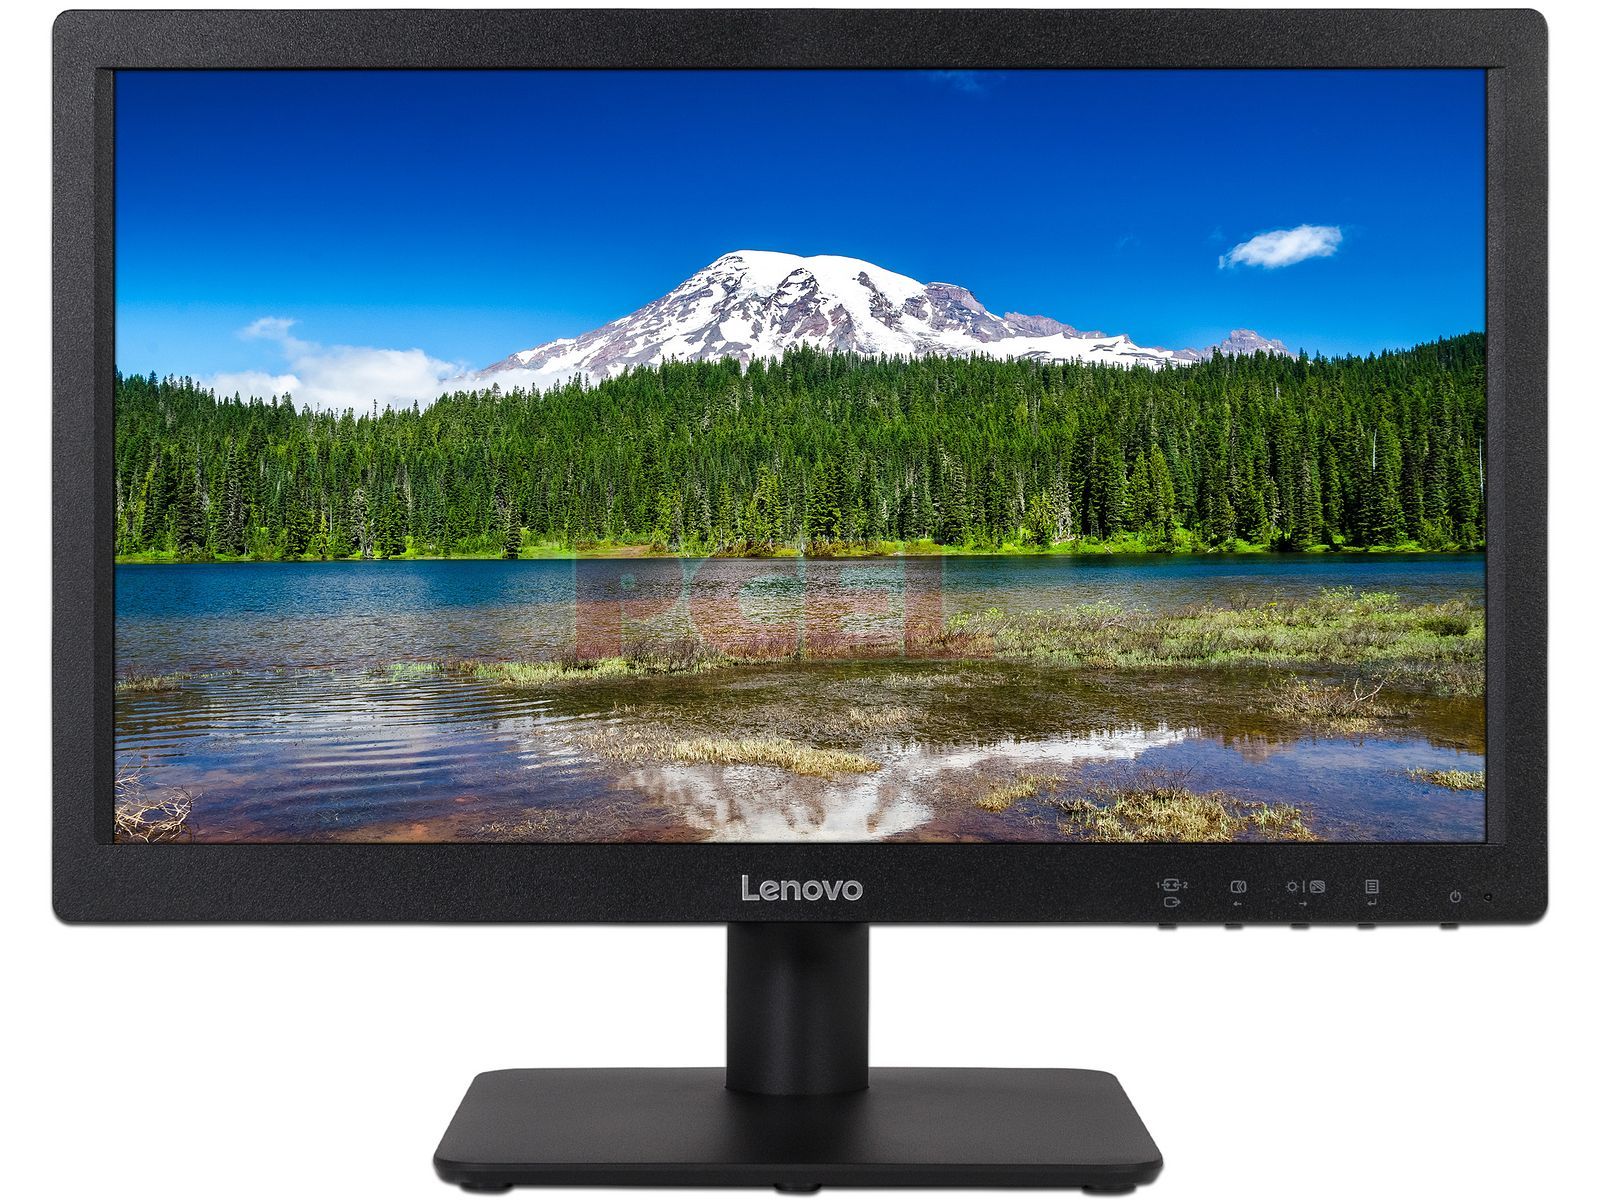 emitir Decano Árbol Monitor LED Lenovo D19-10 de 18.5", Resolución 1366 x 768, 5 ms.